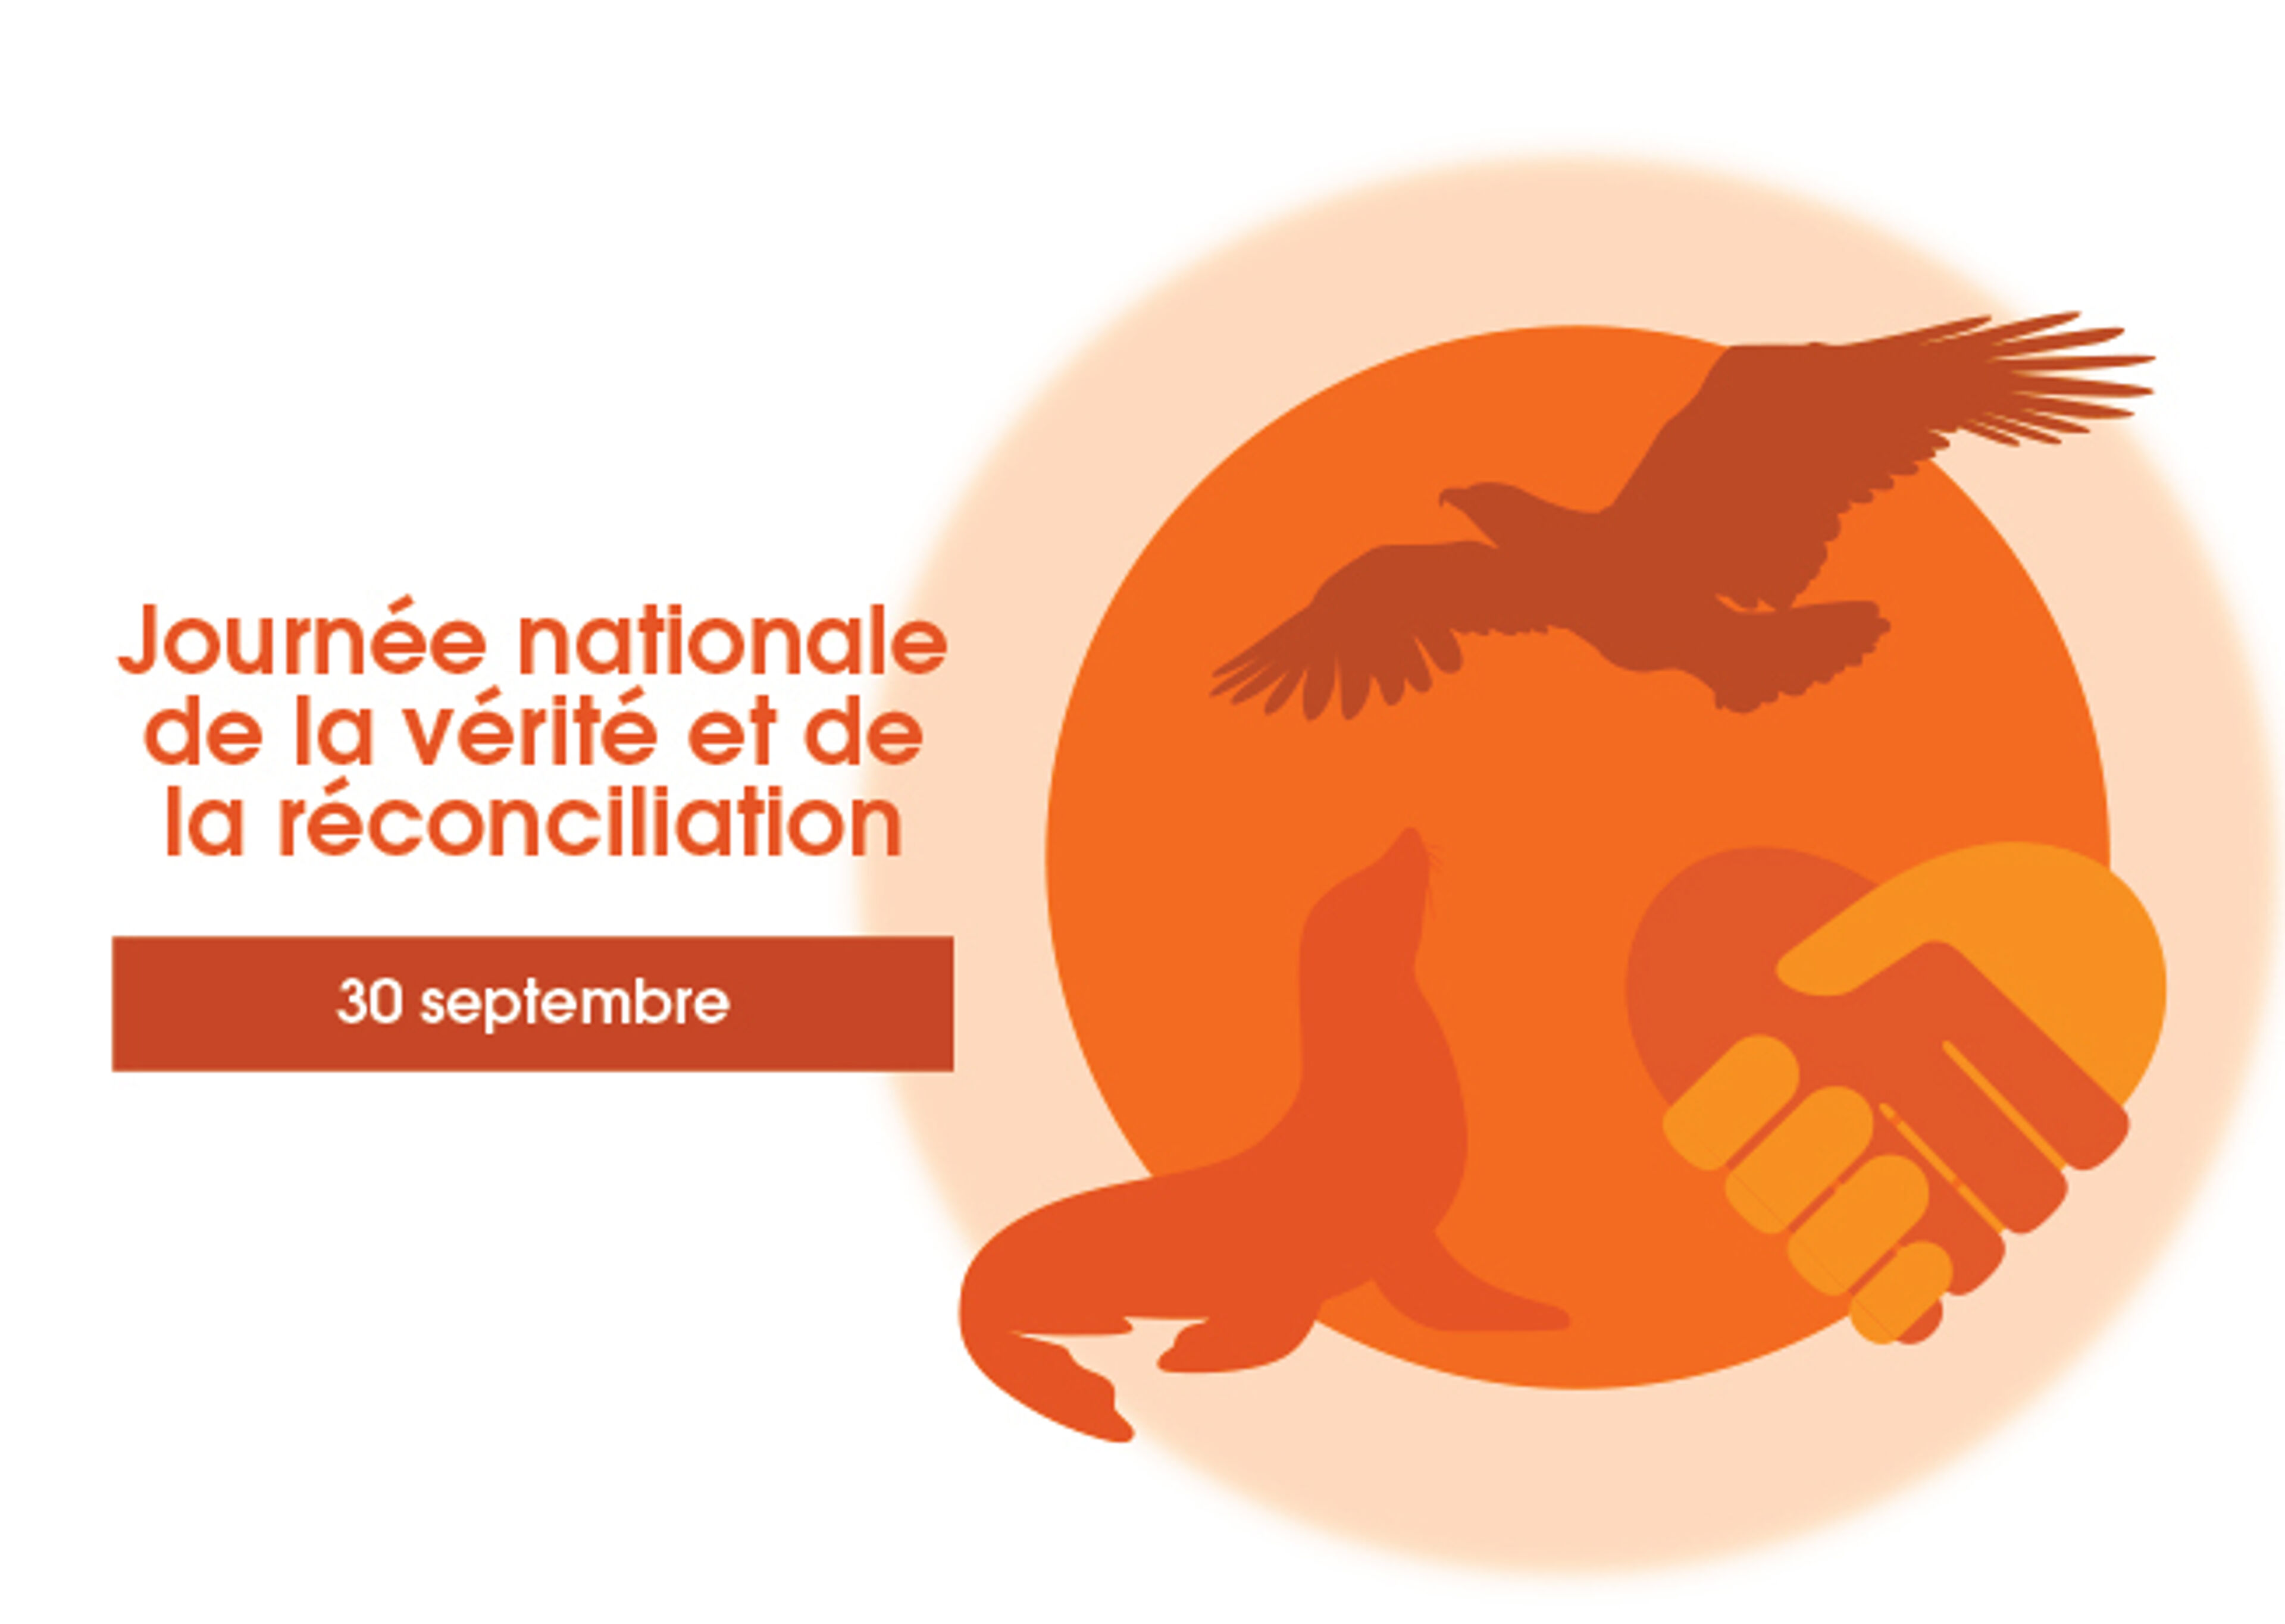  Image commémorative pour la Journée Nationale de la Vérité et Réconciliation le 30 septembre, avec un aigle et une poignée de main.